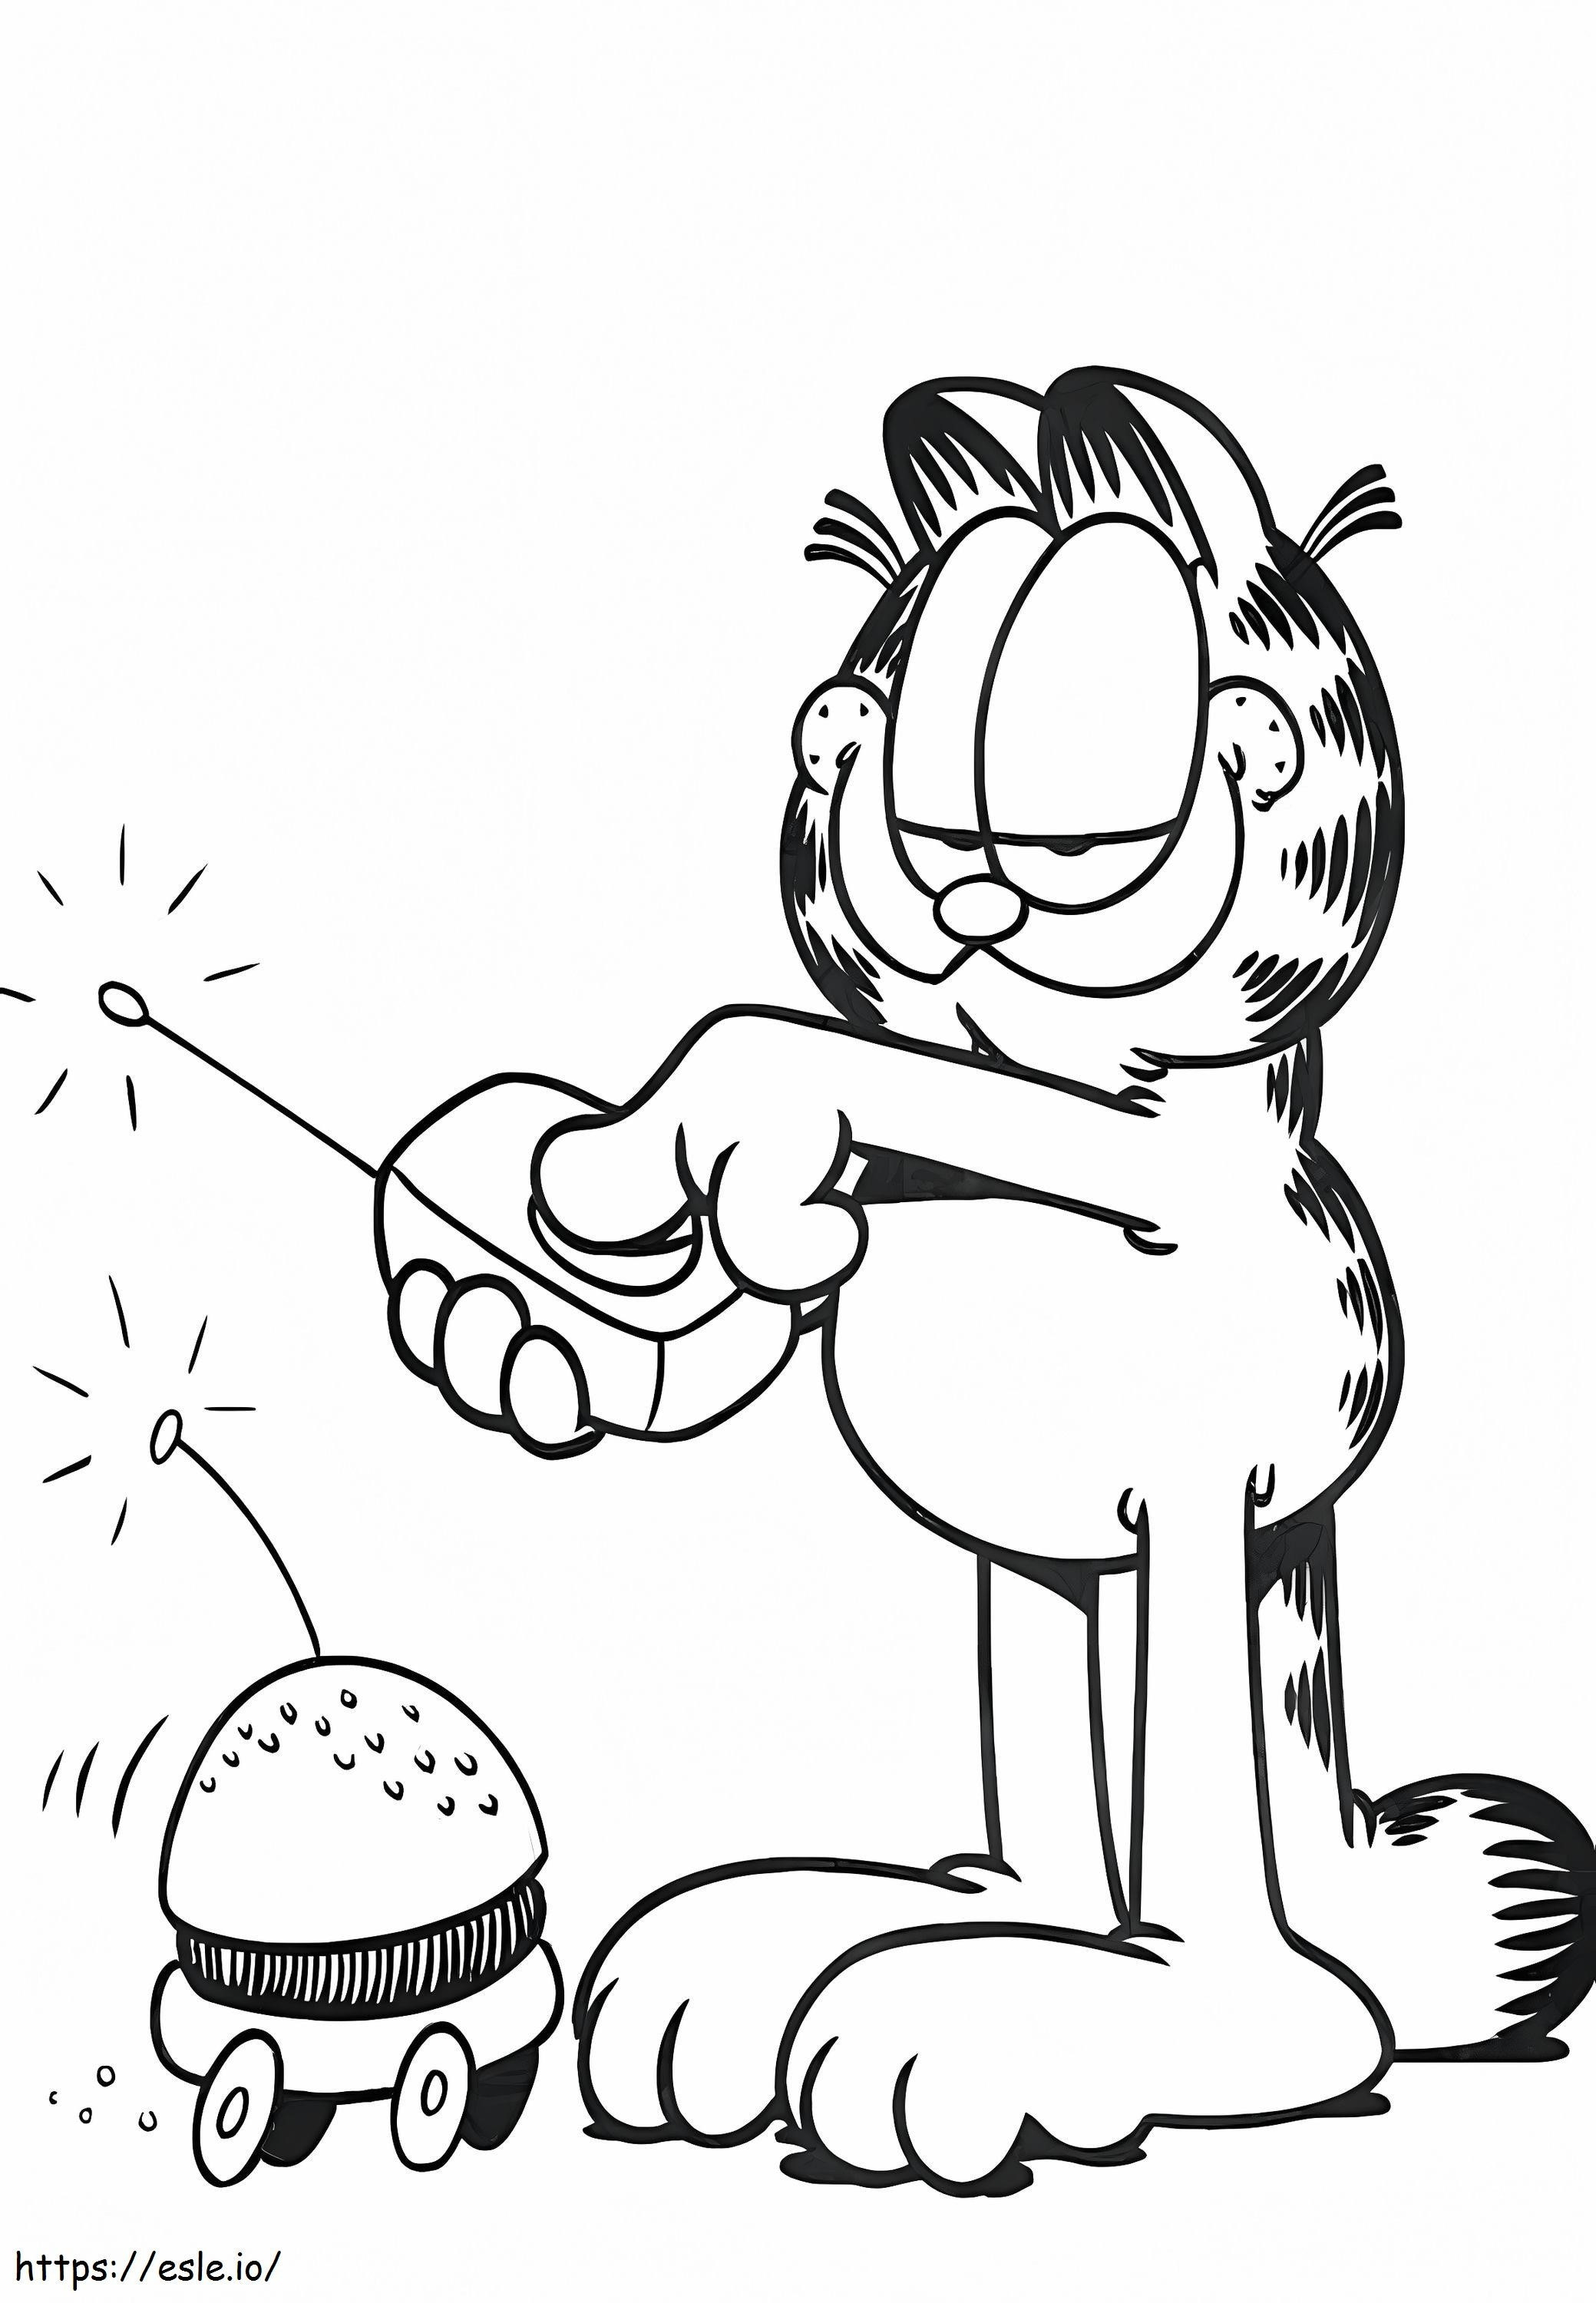 Garfield fährt einen Hamburger ausmalbilder